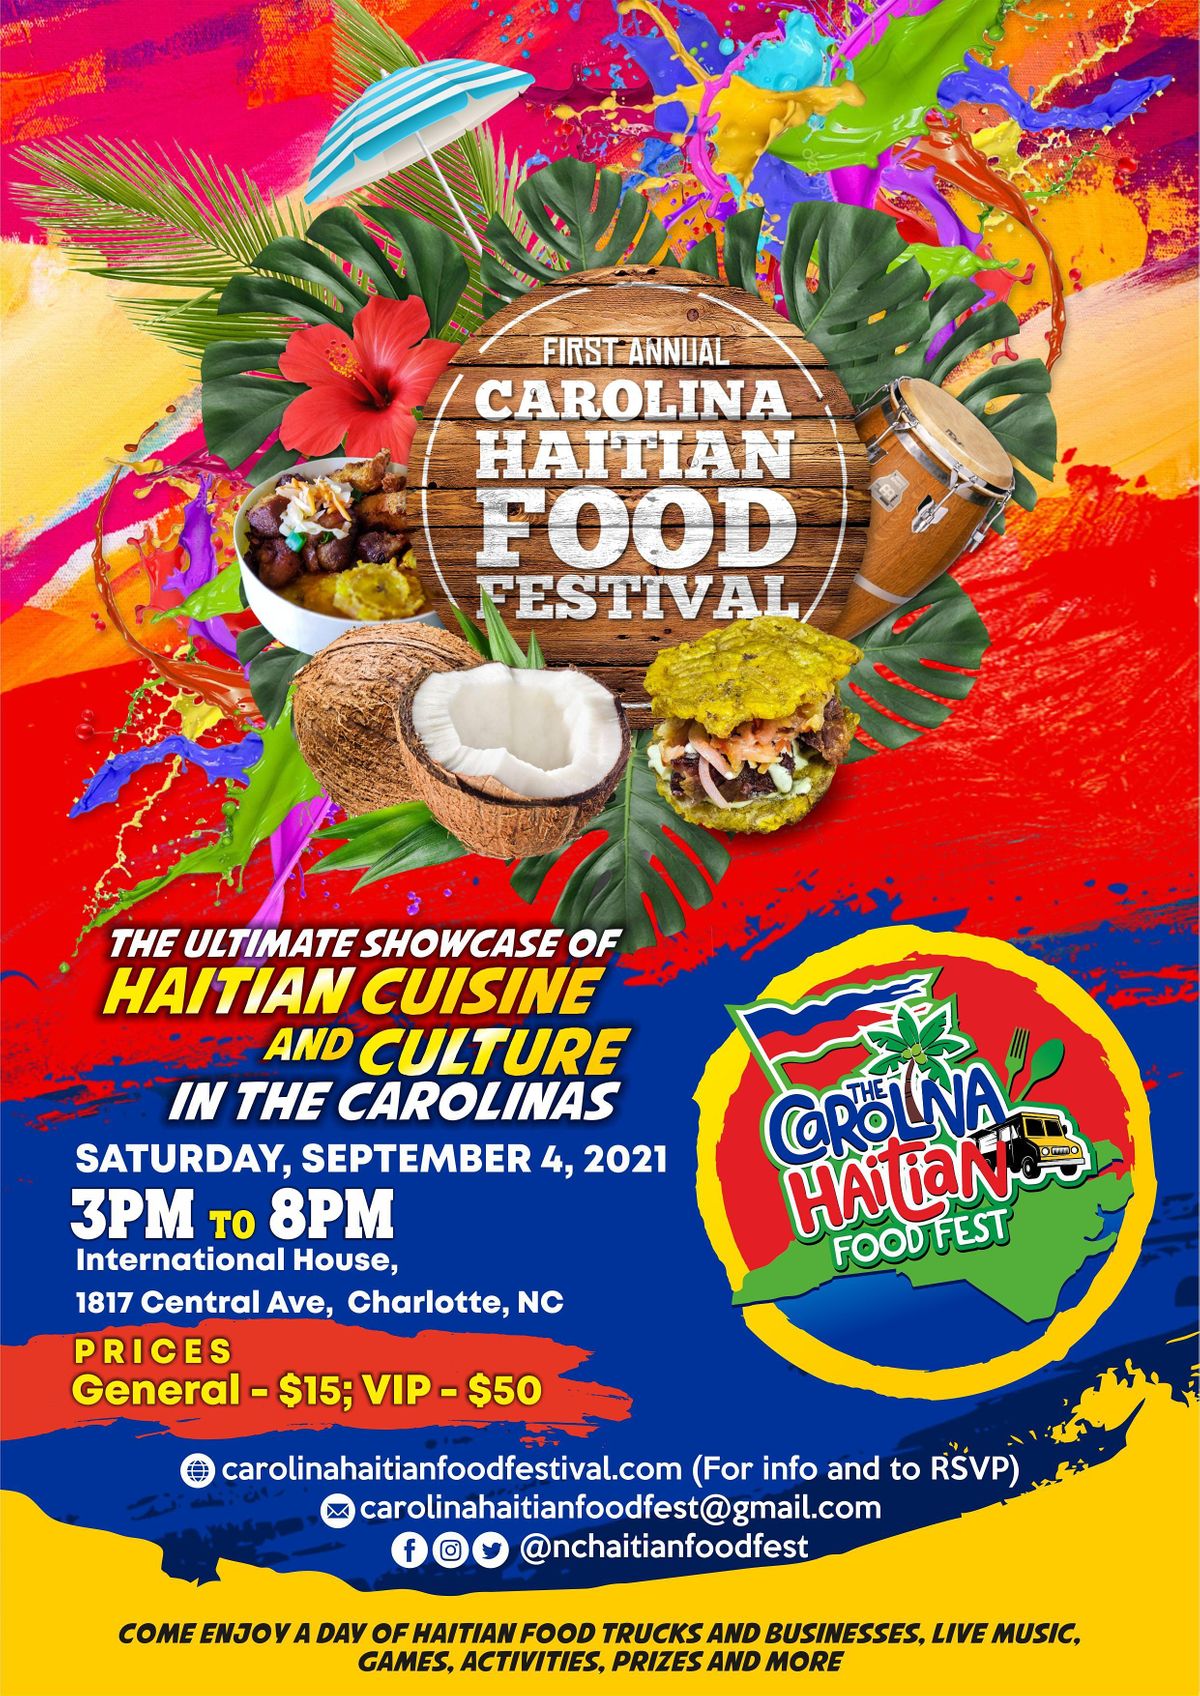 The Carolina Haitian Food Festival